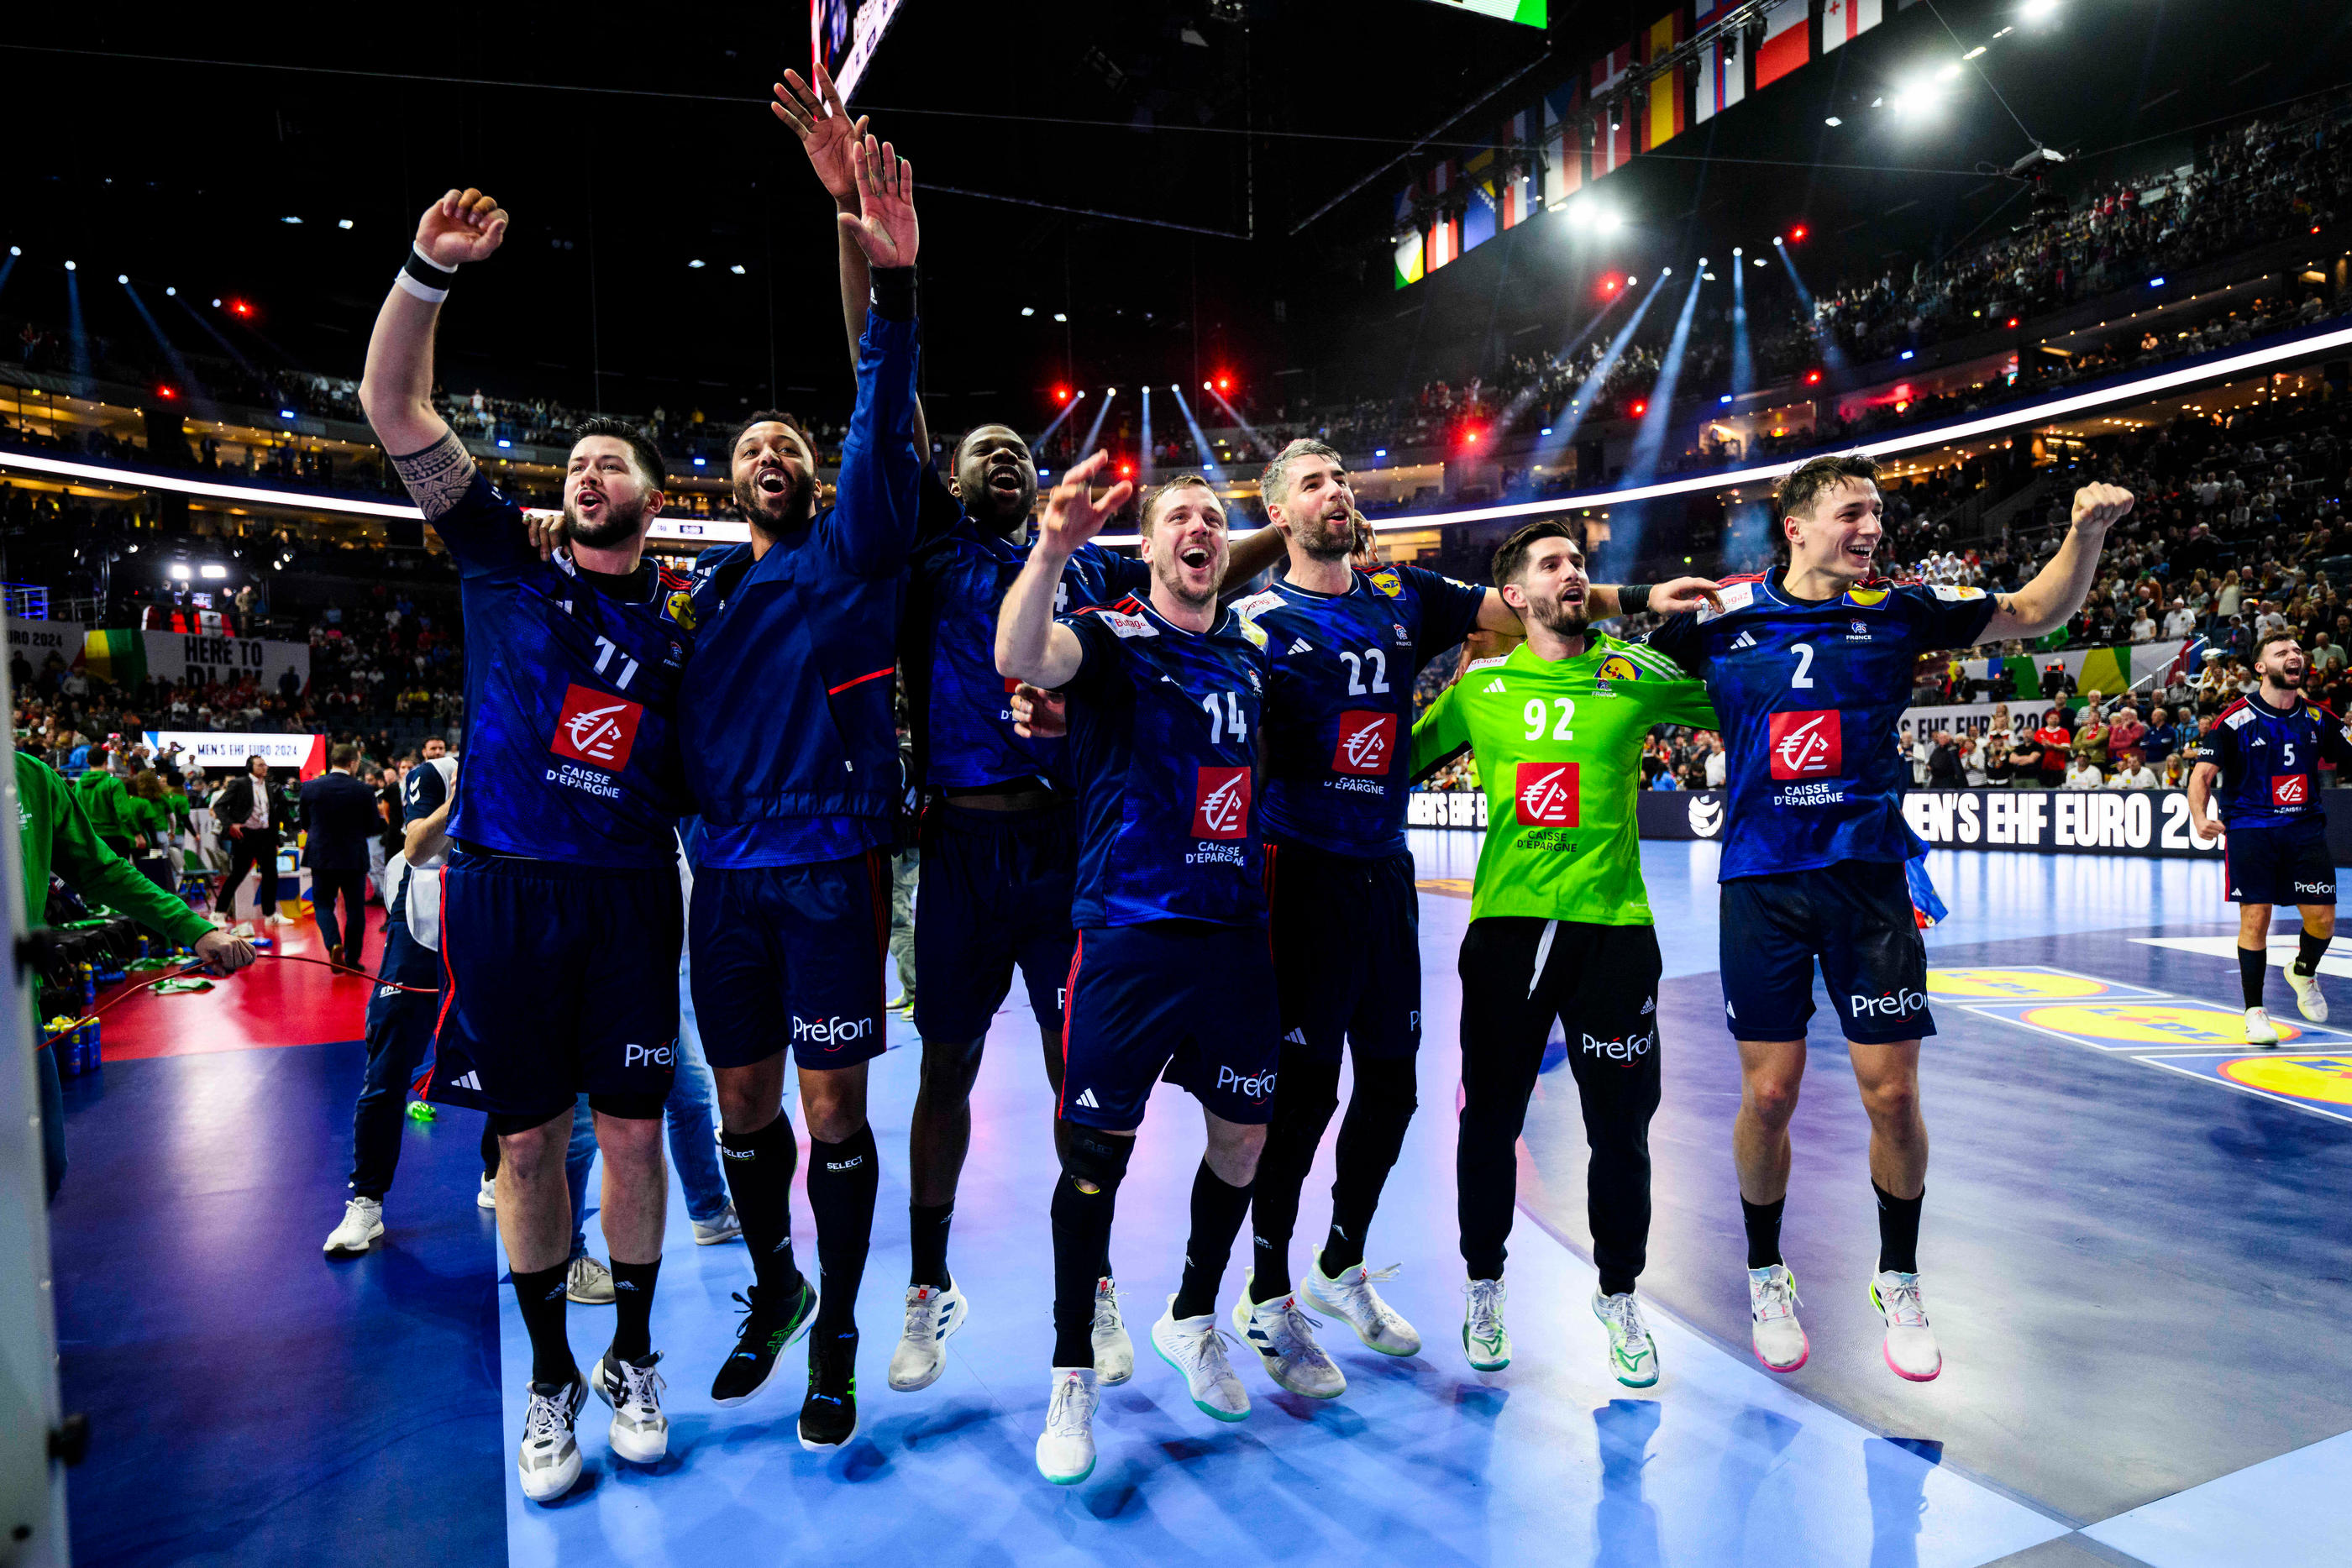 Les handballeurs tricolores, champions d'Europe en janvier, doivent selon Gracenote conserver leur titre olympique cet été lors des JO de Paris. LP/Icon Sport/Tom Weller